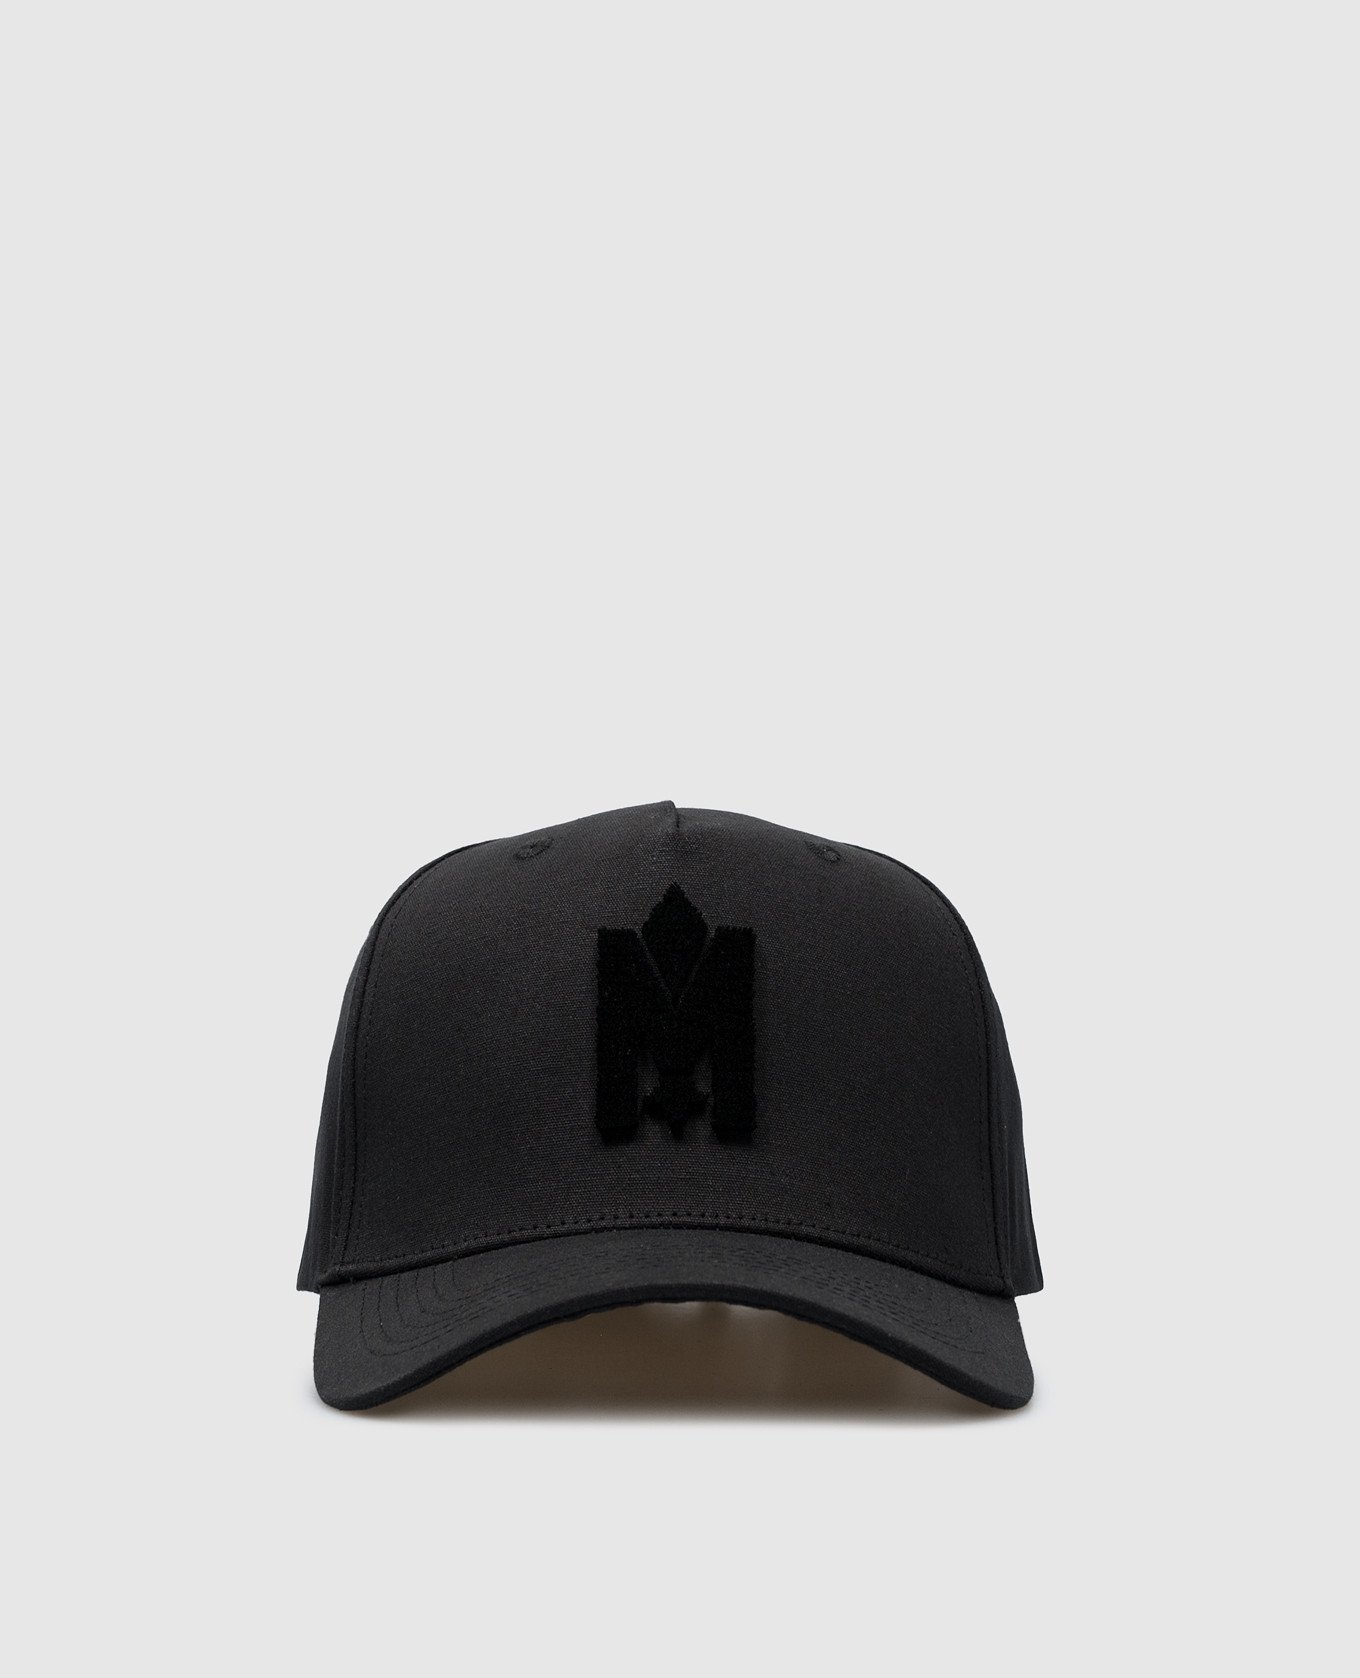 Черная кепка ANDERSON-V с фактурной эмблемой логотипа